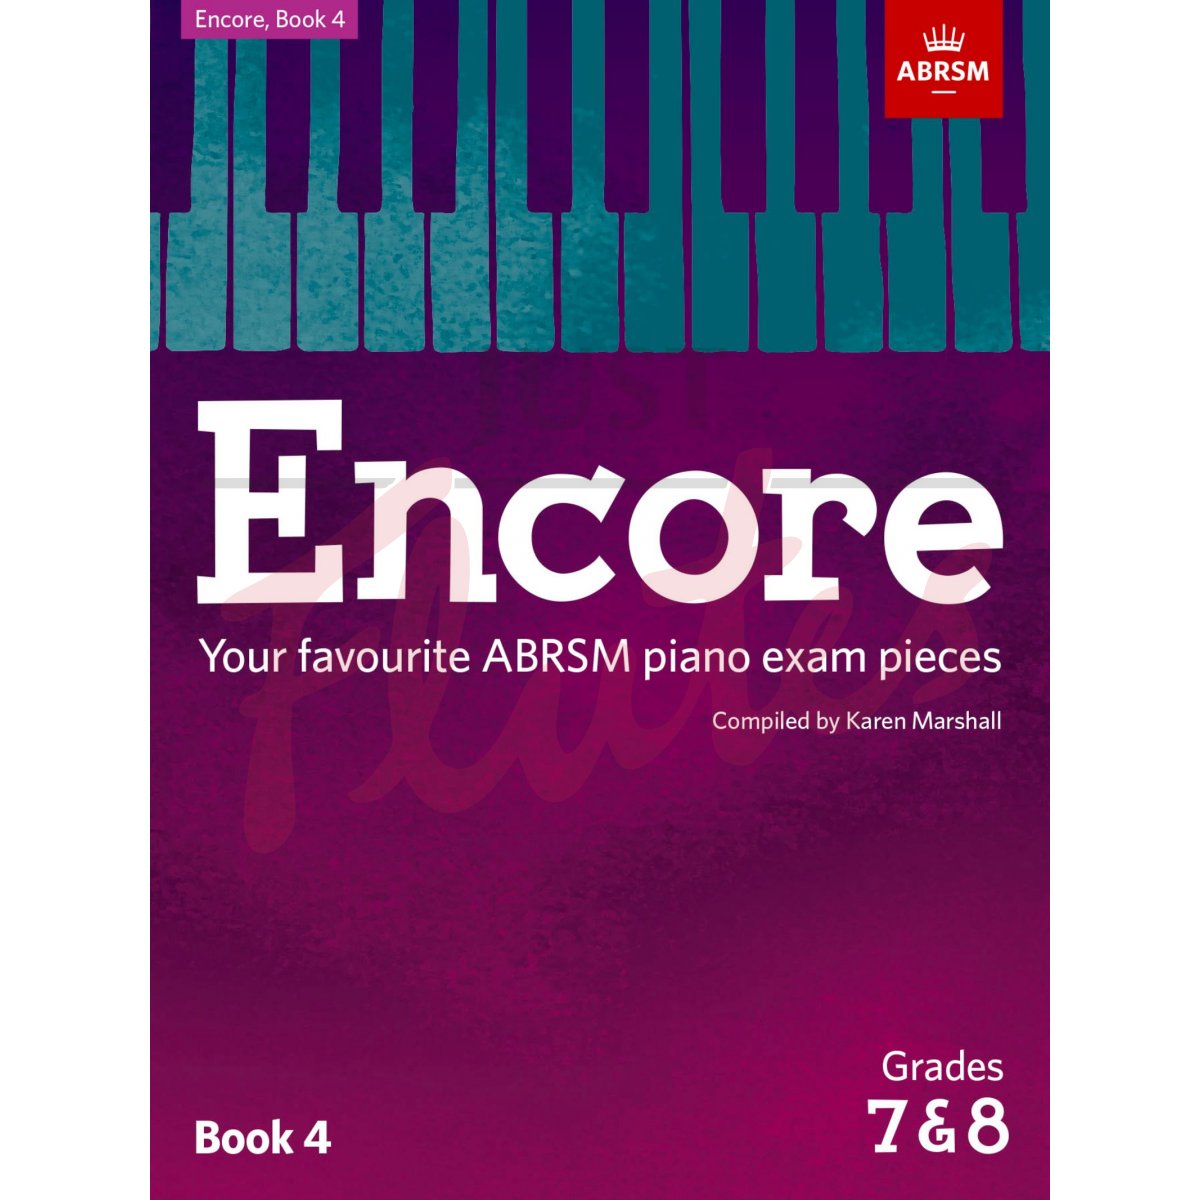 Encore - Favourite ABRSM Piano Exam Pieces Book 4